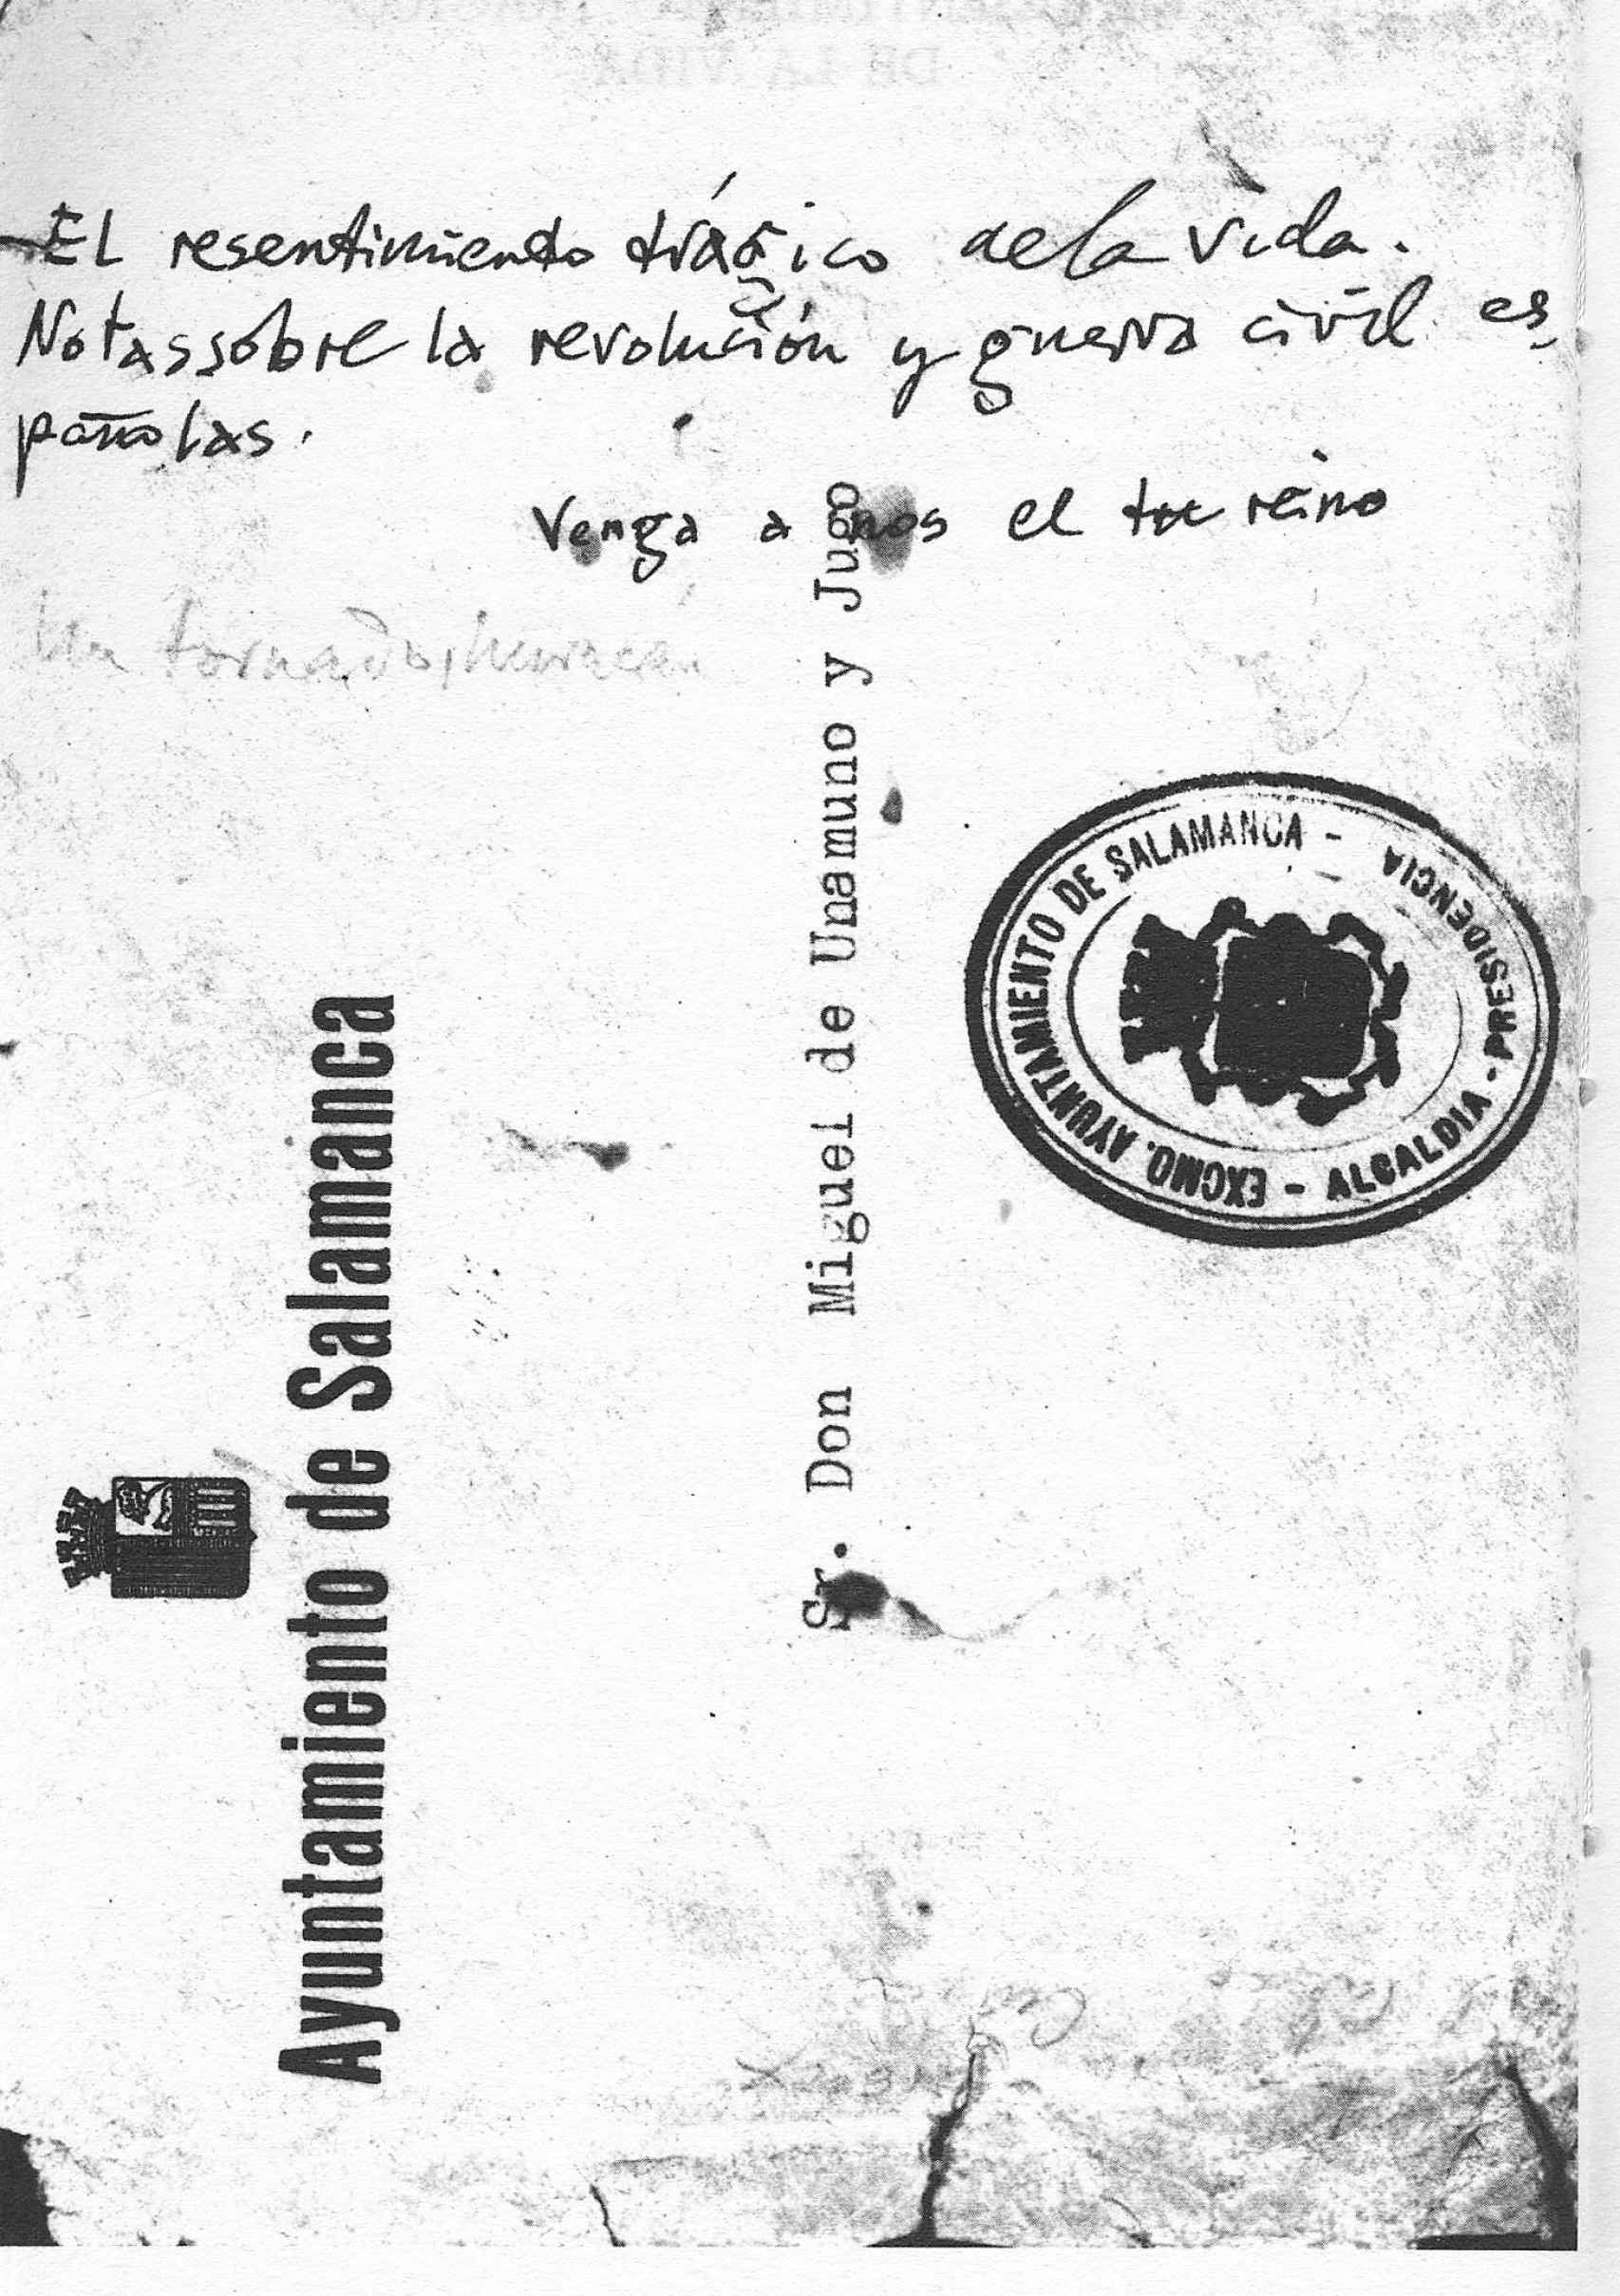 Manuscrito con el título de su libro El resentimiento trágico de la vida, en una carta de la Casa Museo de Unamuno.